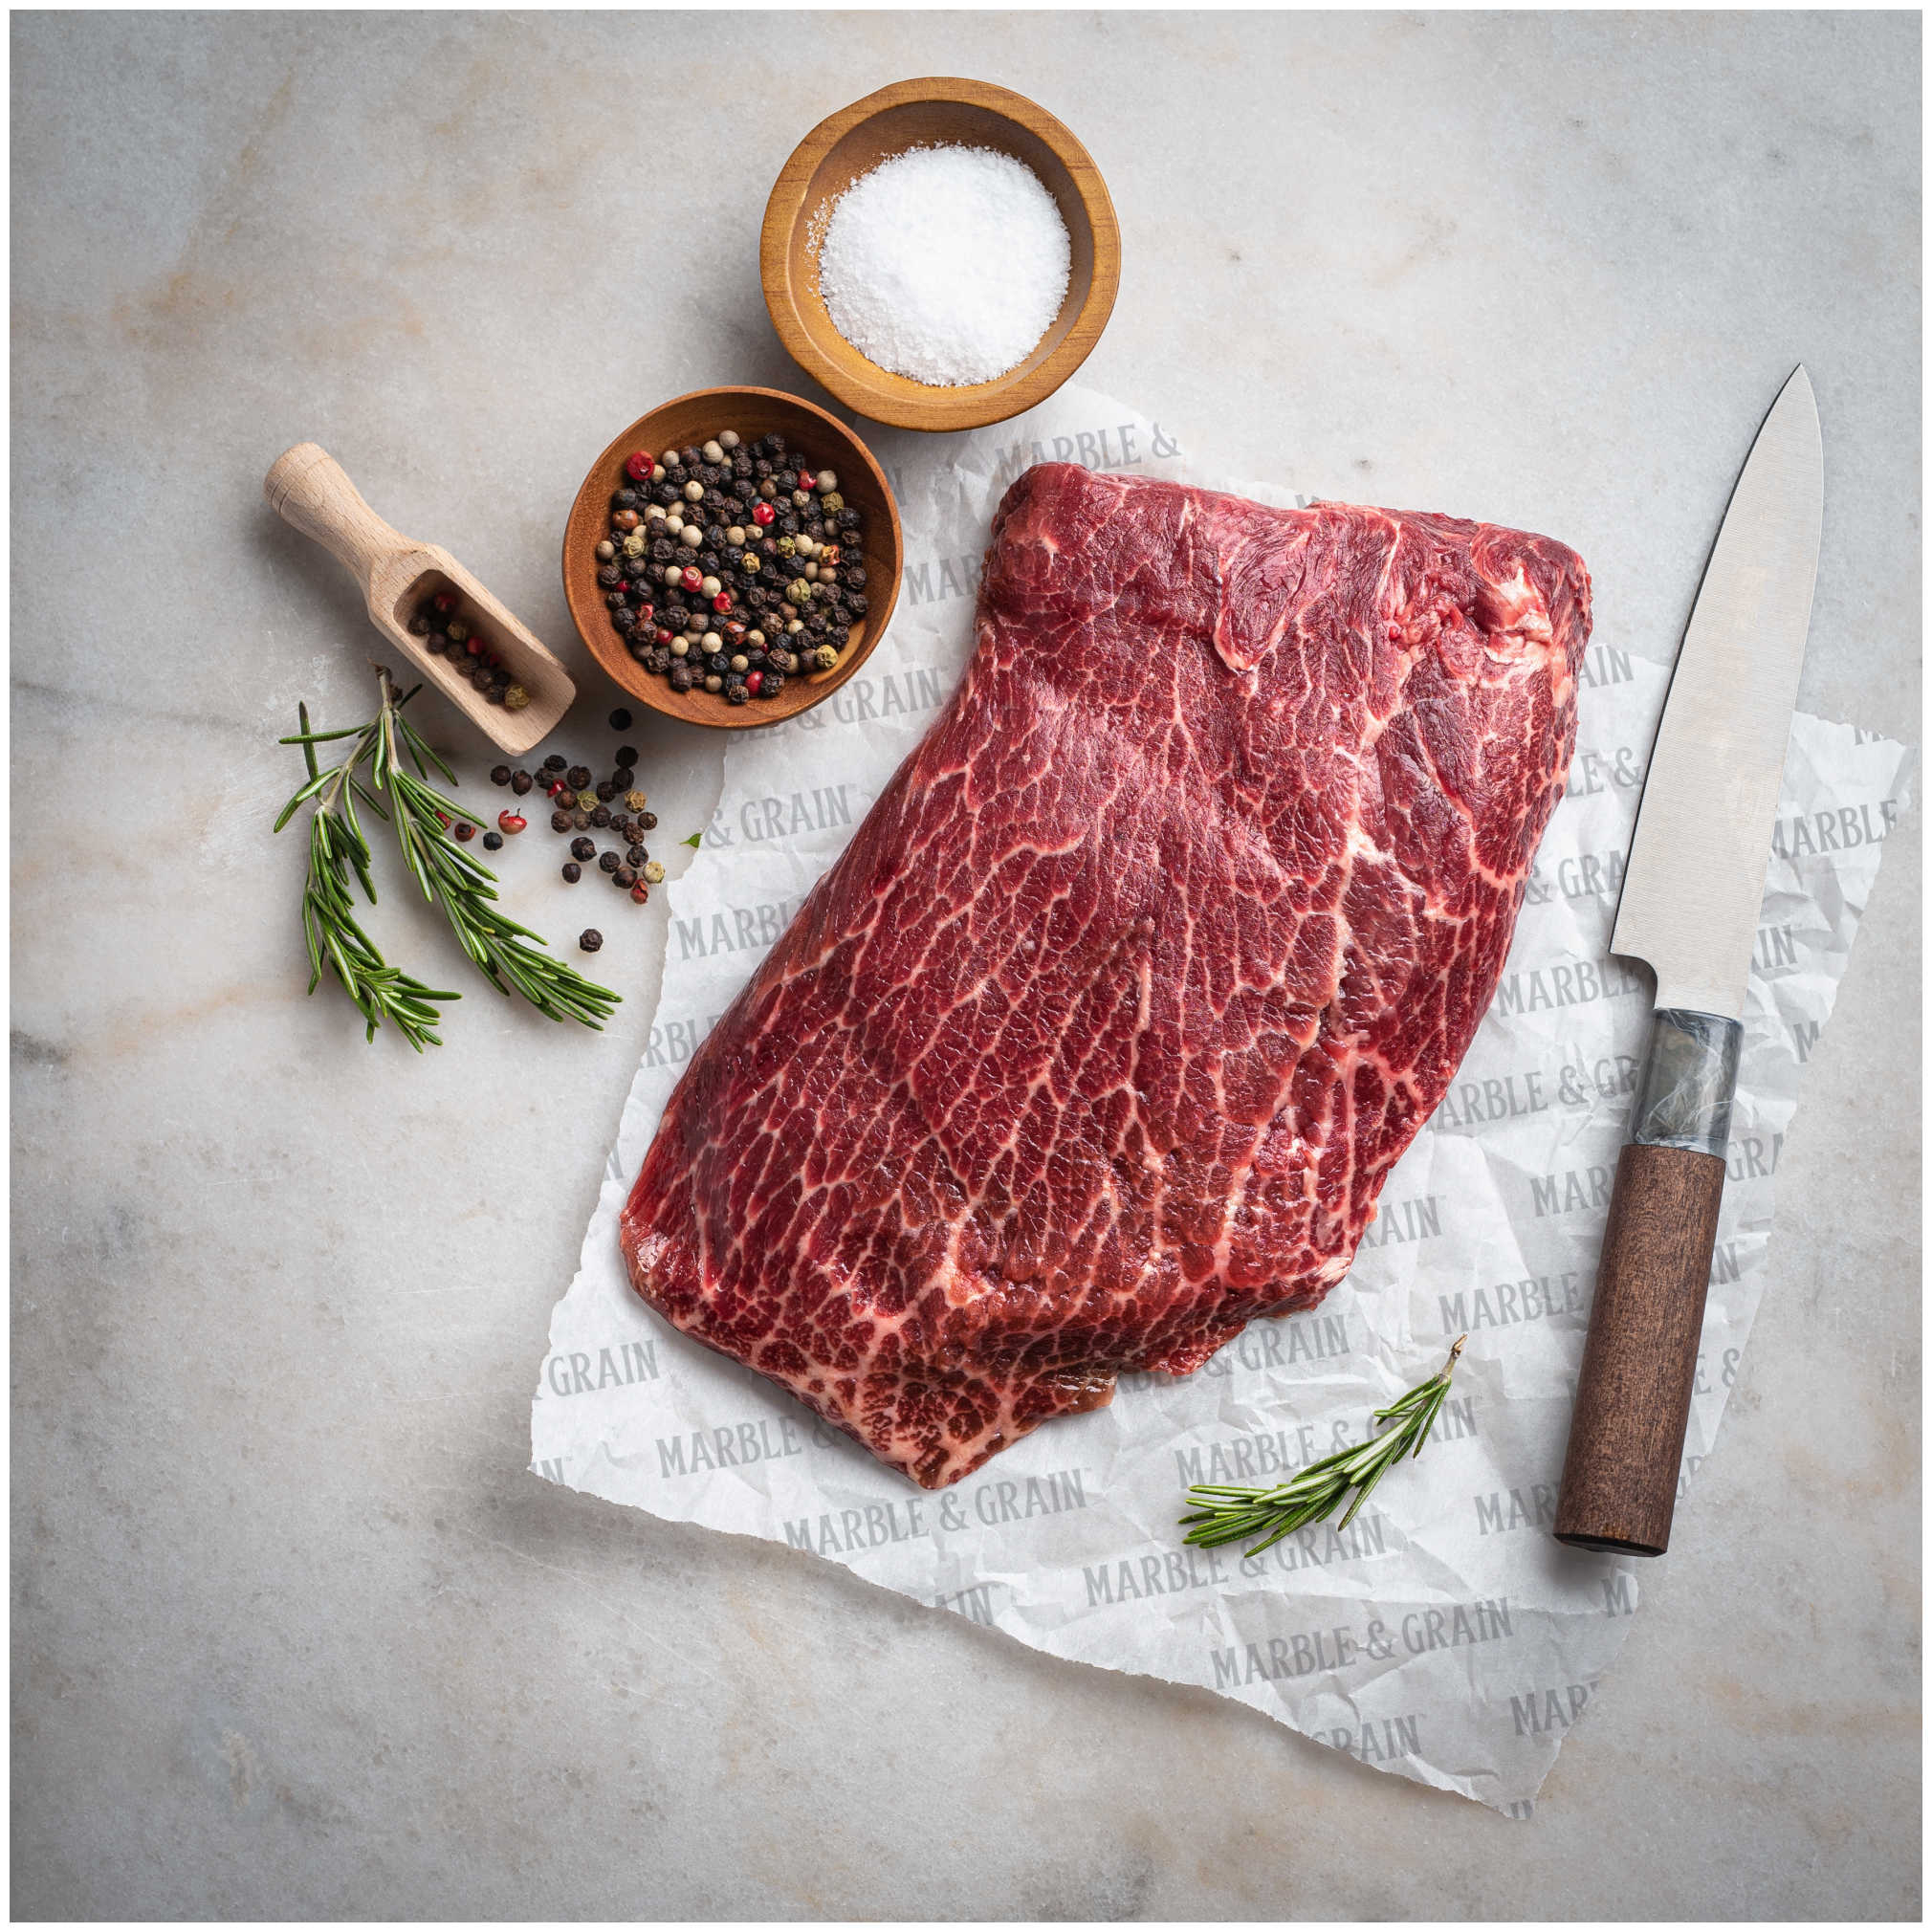 Flatiron Steak 1 pc | approx 1.63 lb @ $36/lb